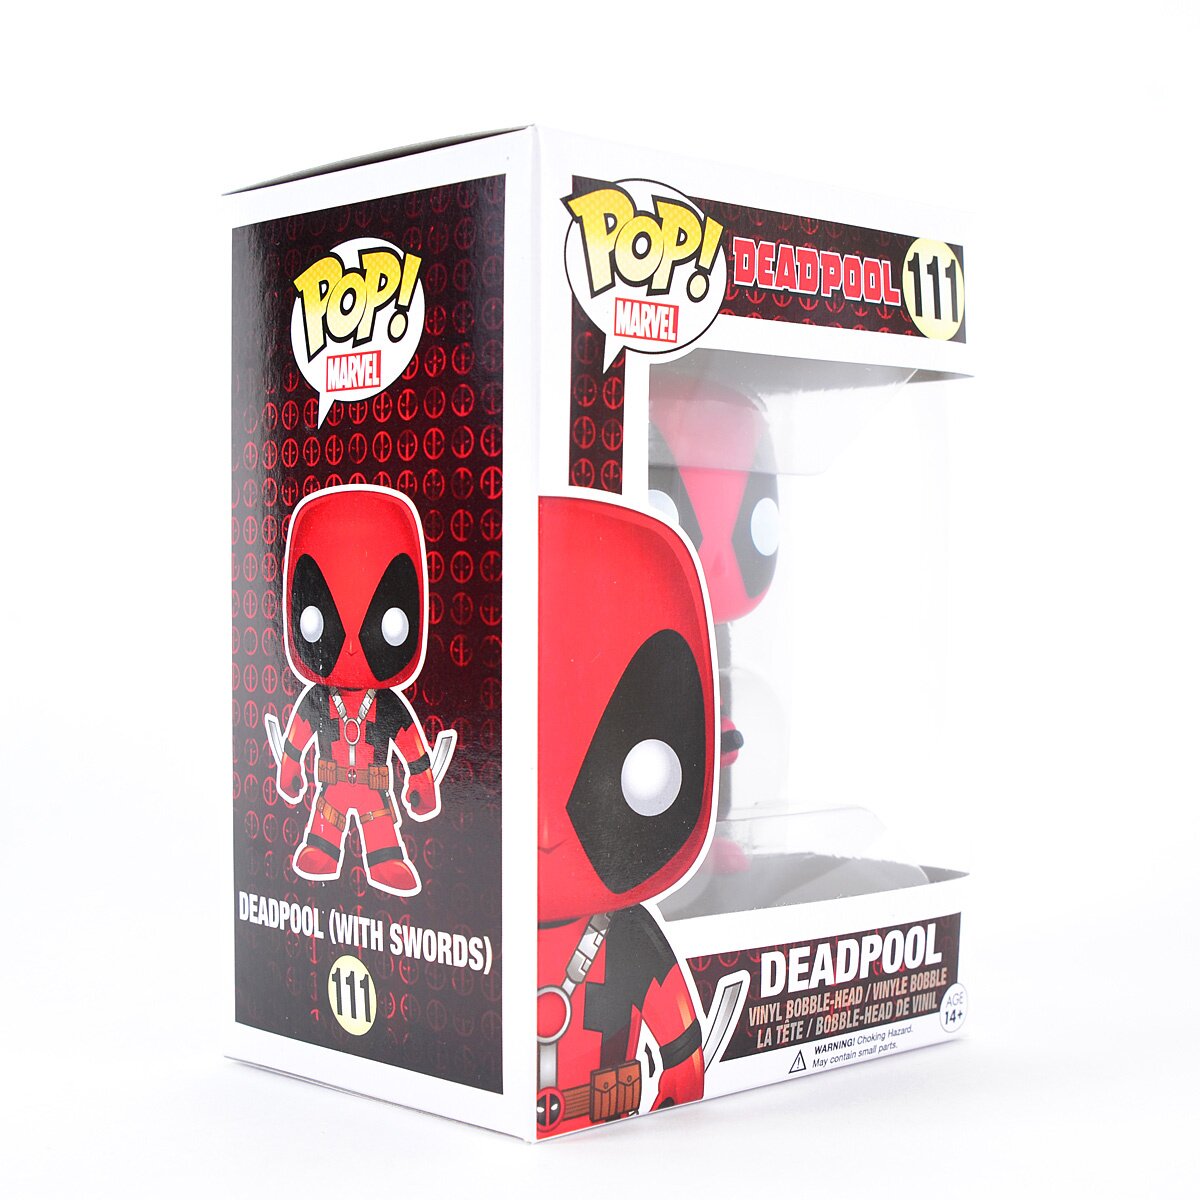 Marvel: Deadpool - Deadpool 111 - Funko Pop! - Vinyl Figur